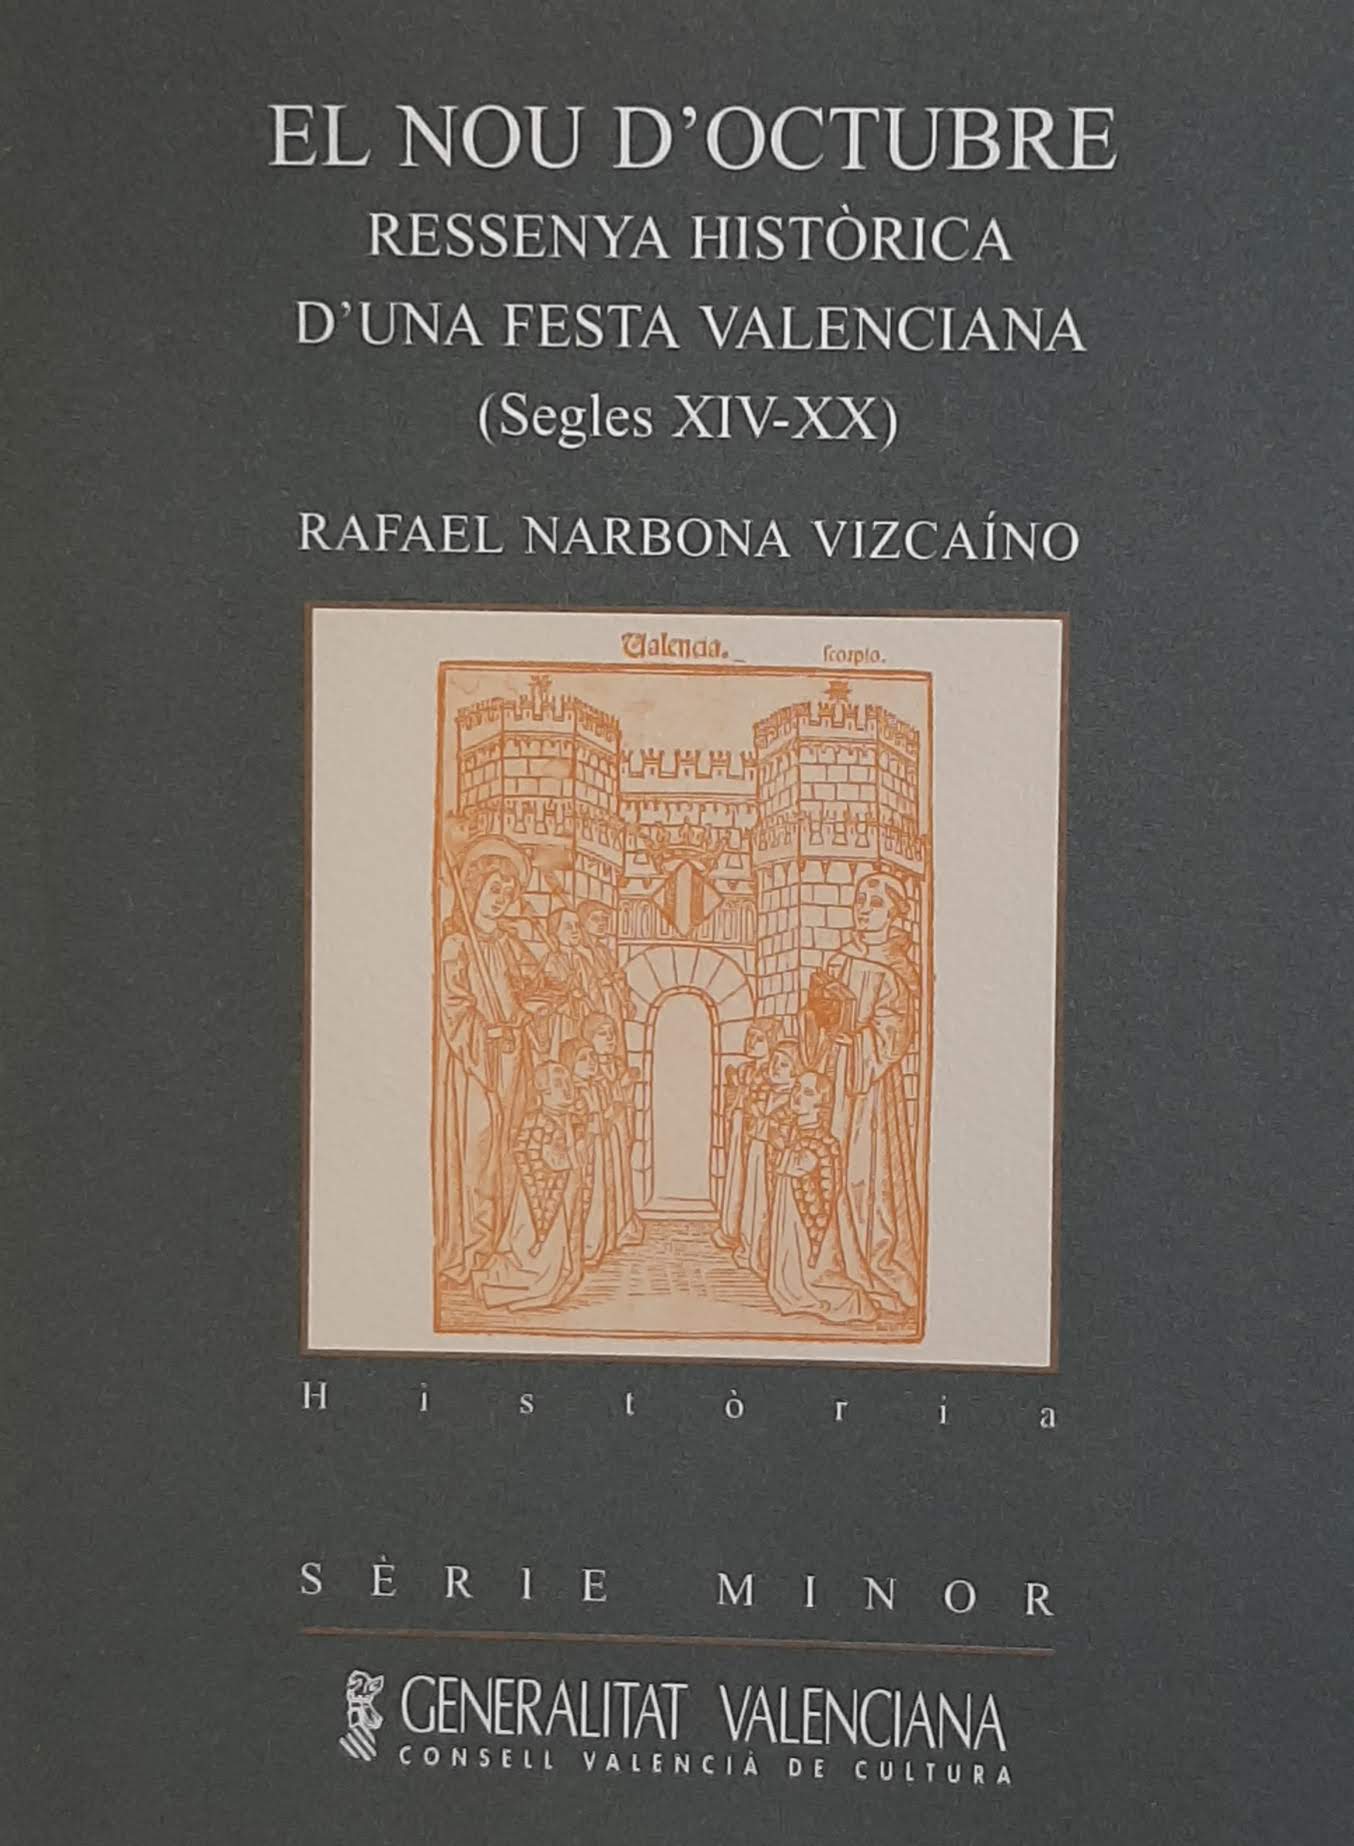 El Nou d'Octubre. Ressenya històrica d'una festa valenciana (segles XIV-XX). Nº 44. Sèrie Minor